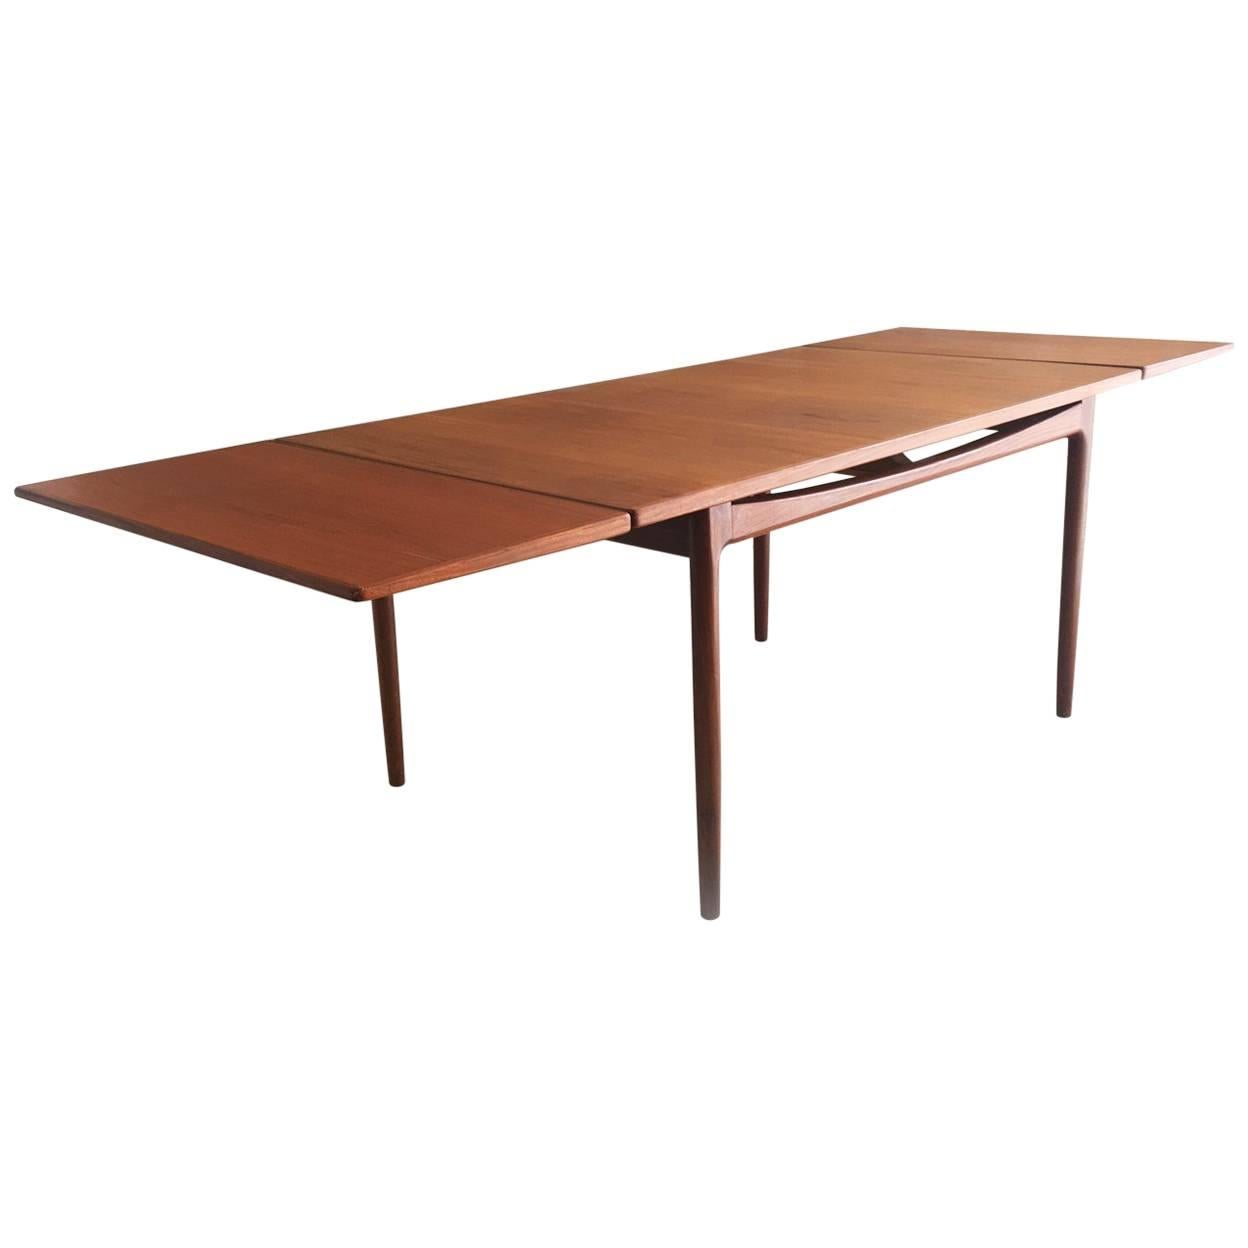 Ib Kofod-Larsen for G-Plan’s Danish Range 1960s Teak Extendable Dining Table For Sale